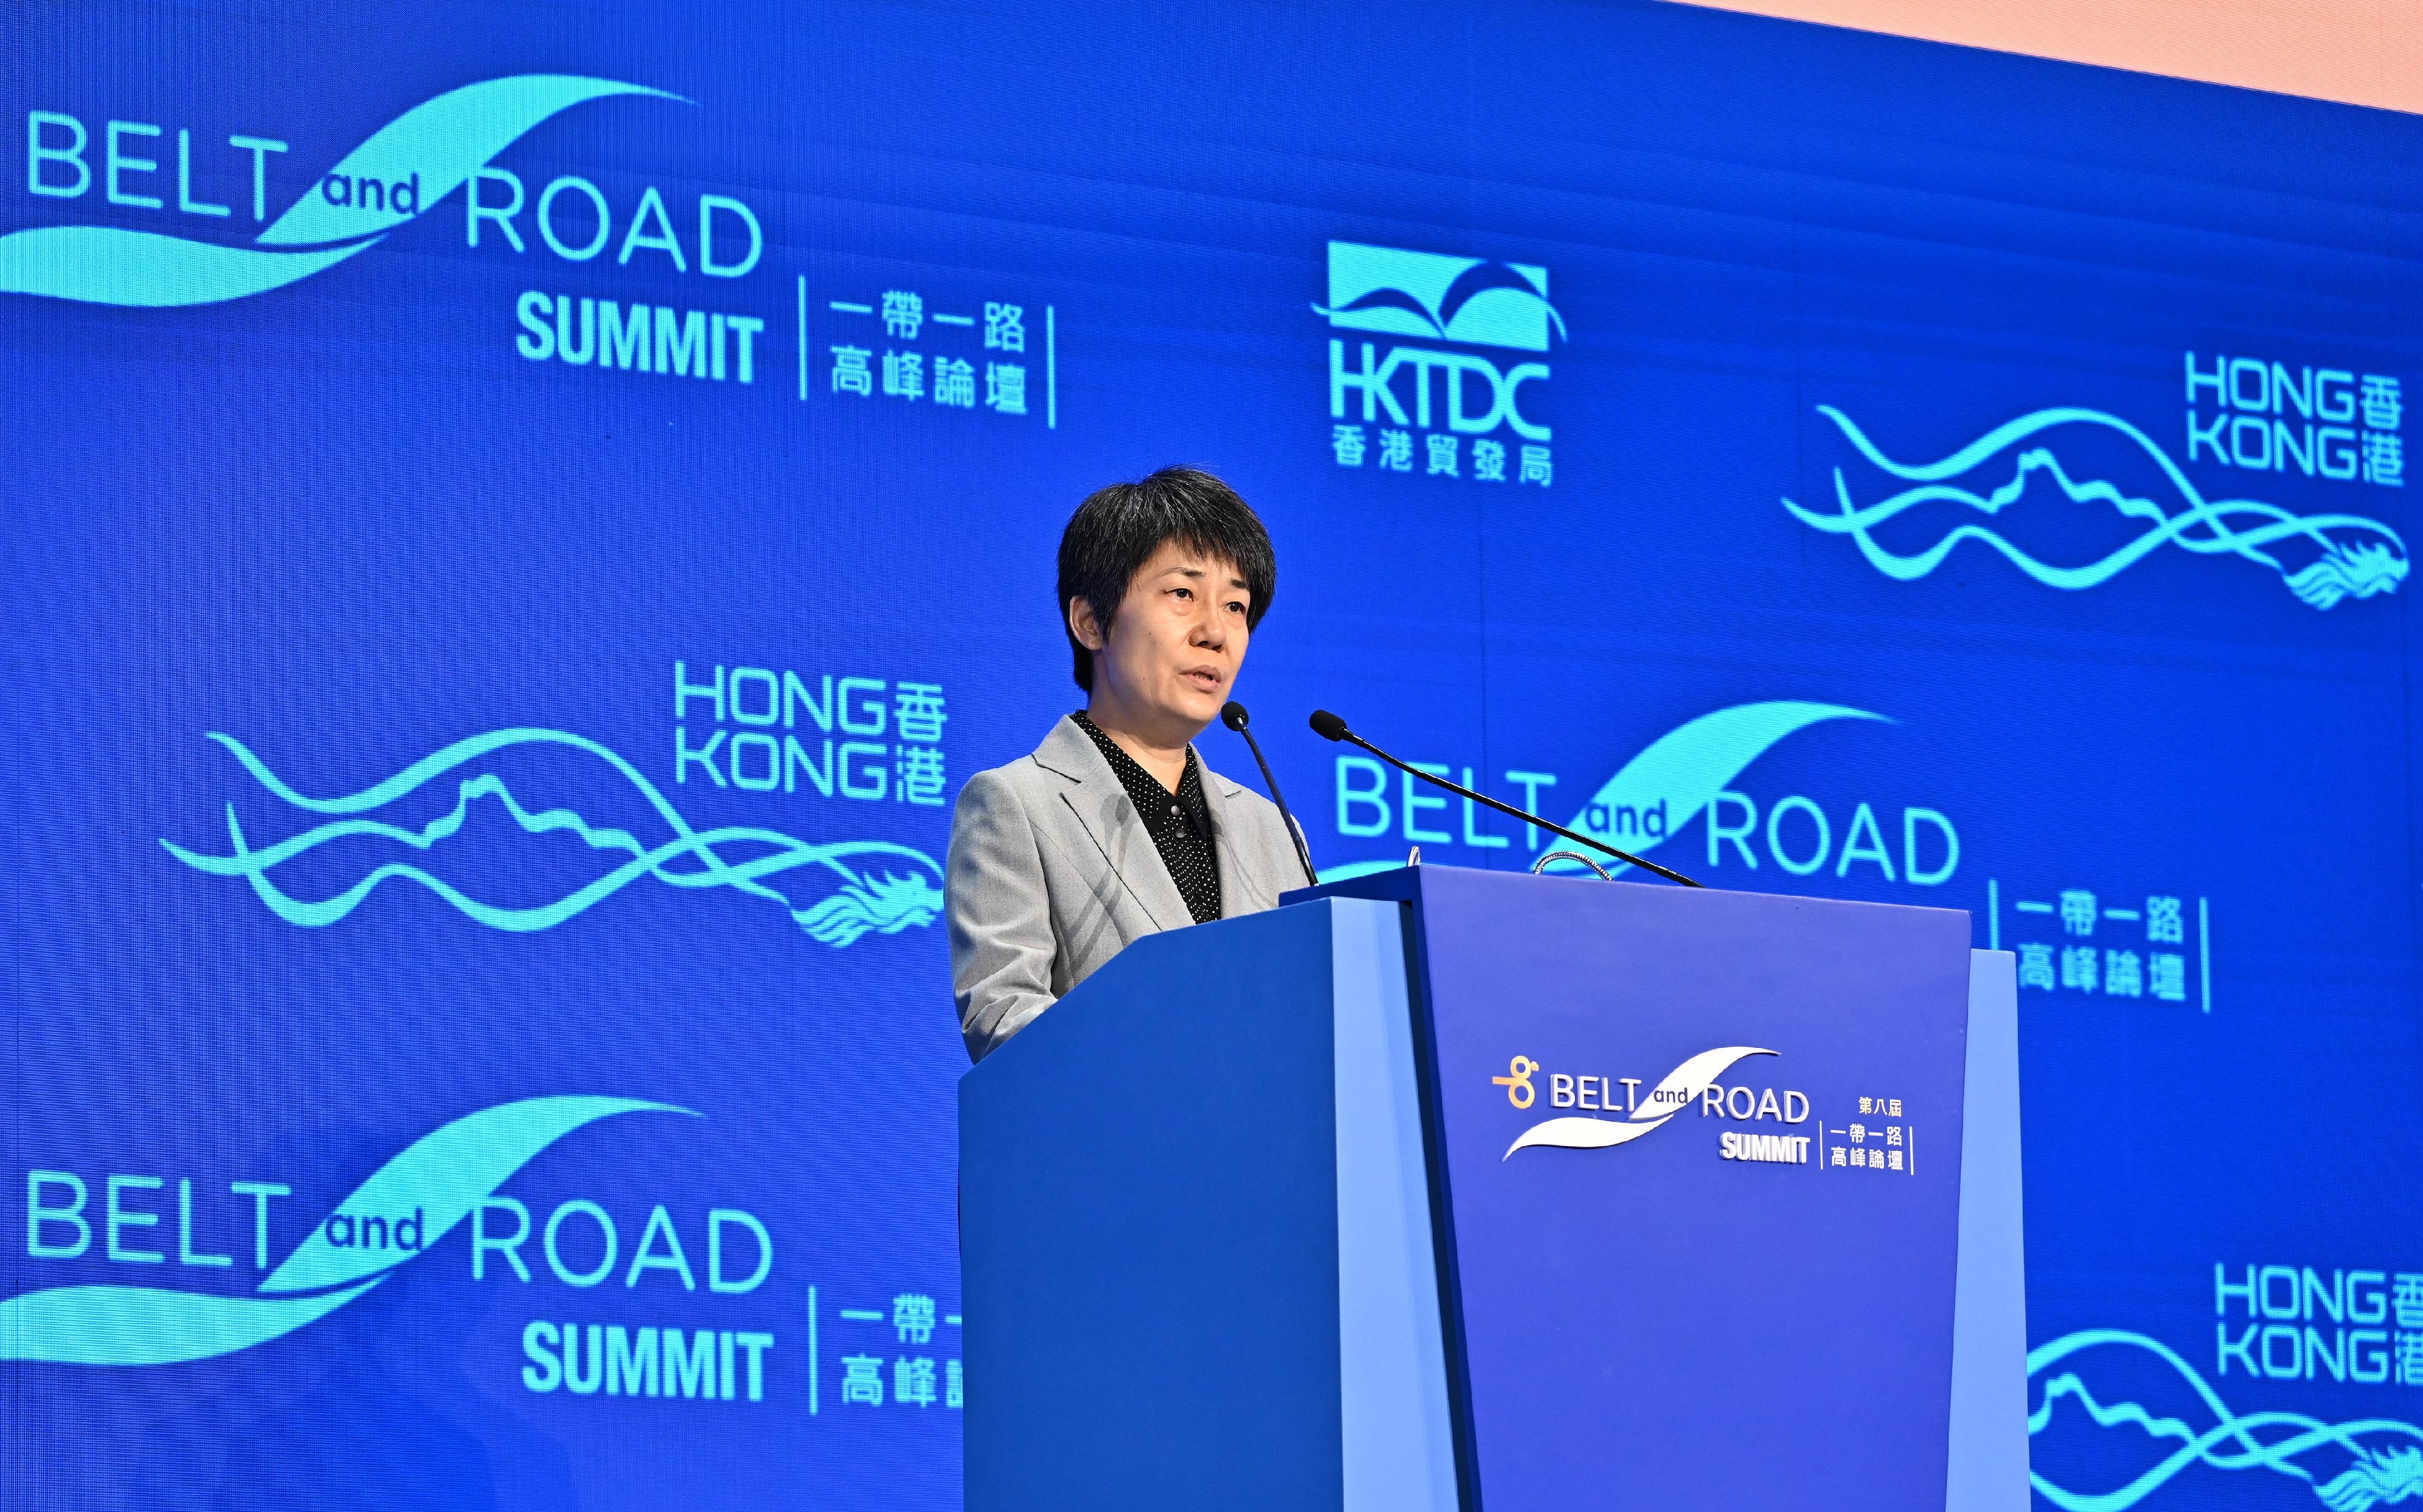 第八屆「一帶一路高峰論壇」今日（九月十三日）開幕。國家商務部副部長郭婷婷今早在開幕環節致辭。
